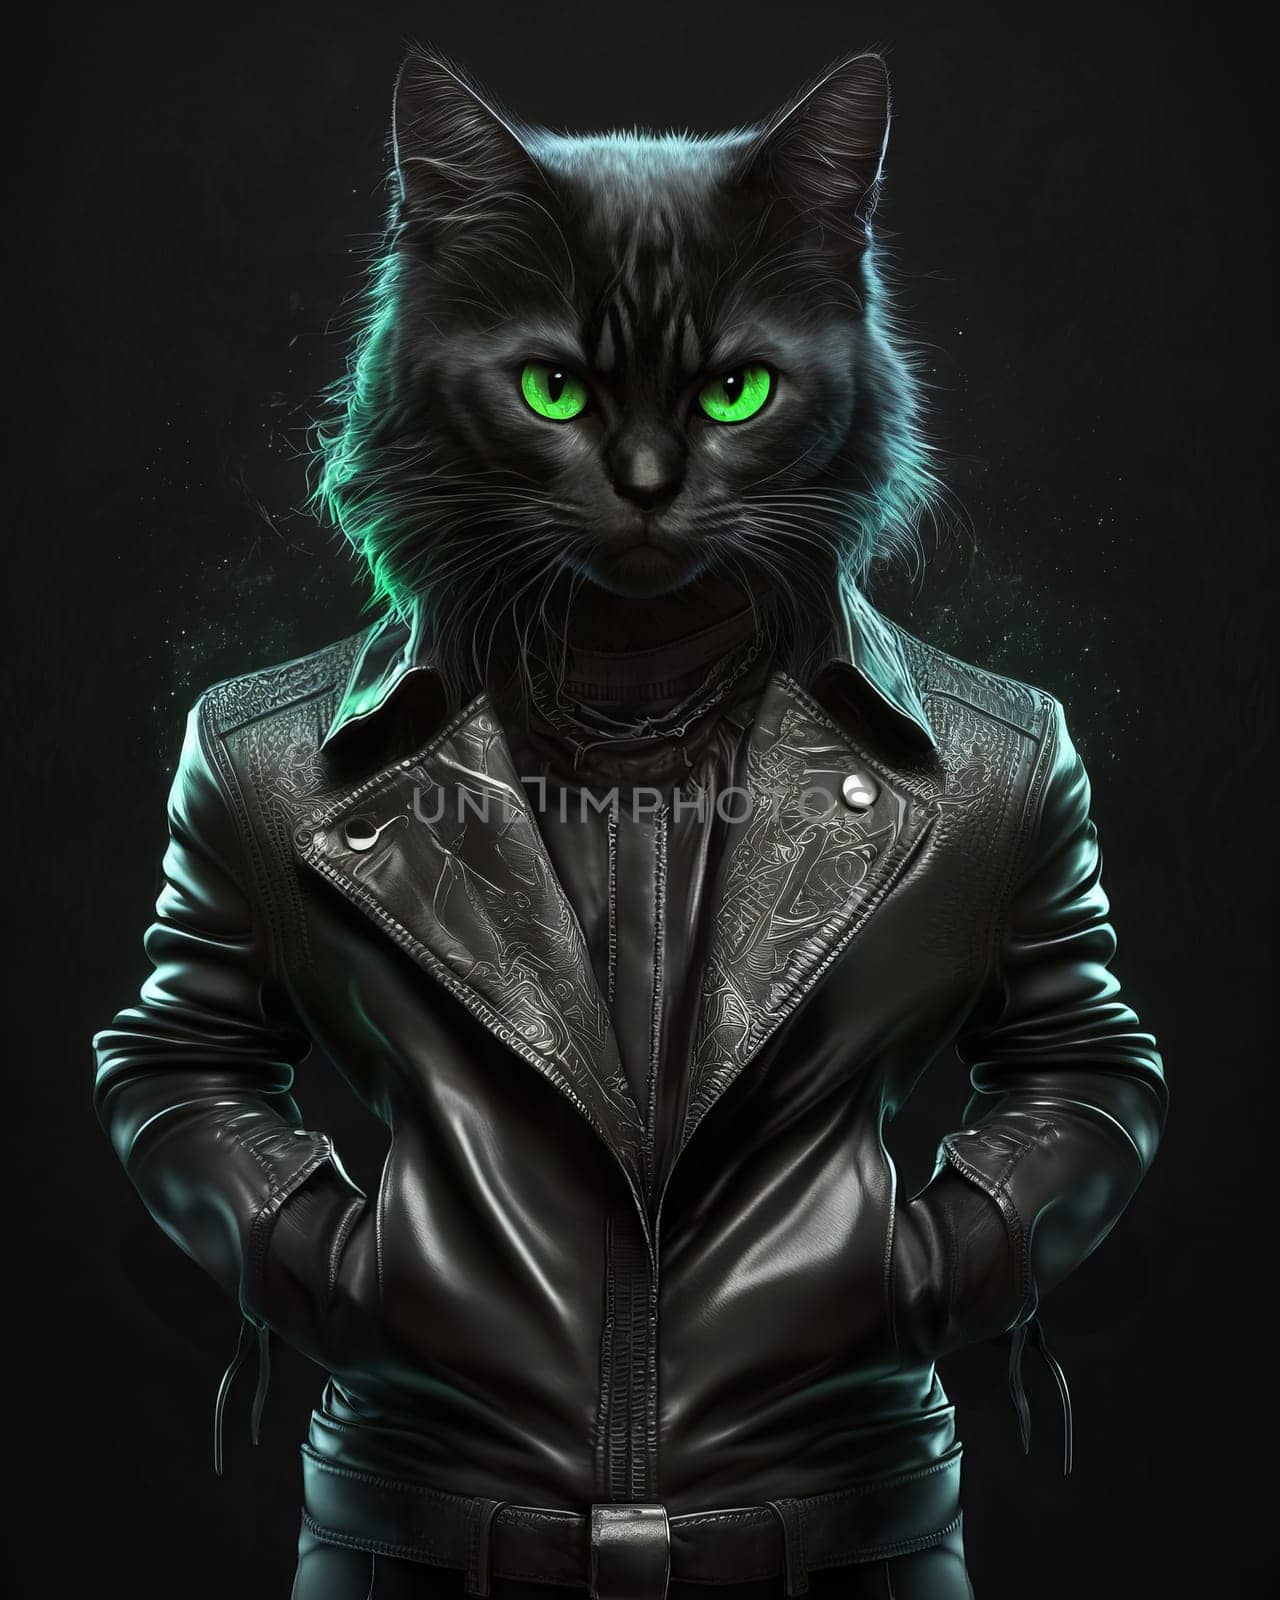 Cat rocker in black leather jacket by studiodav